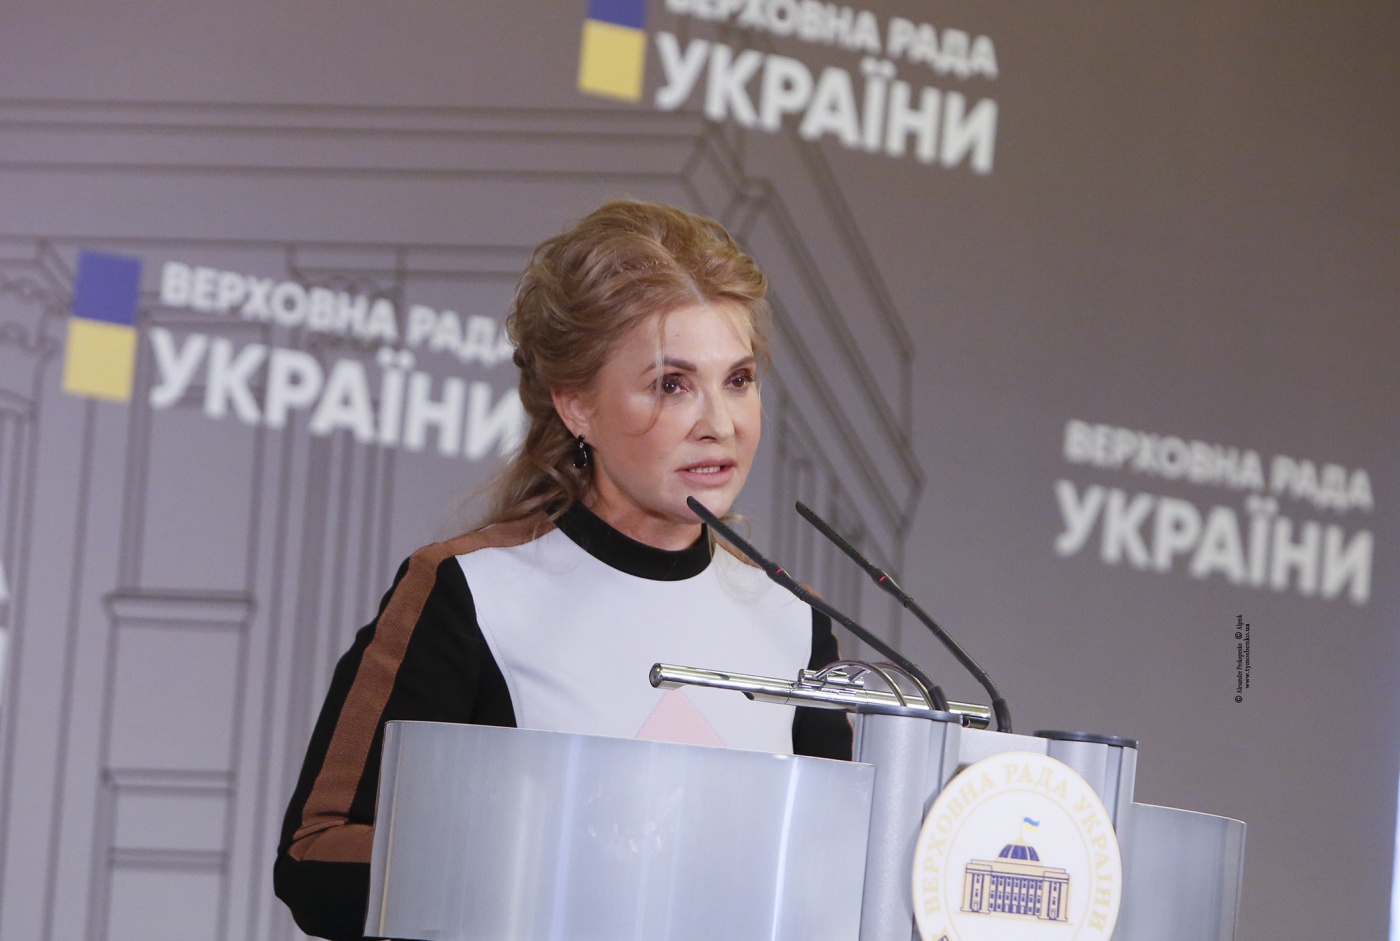 Тимошенко требует срочно ввести мораторий на повышение тарифов для населения